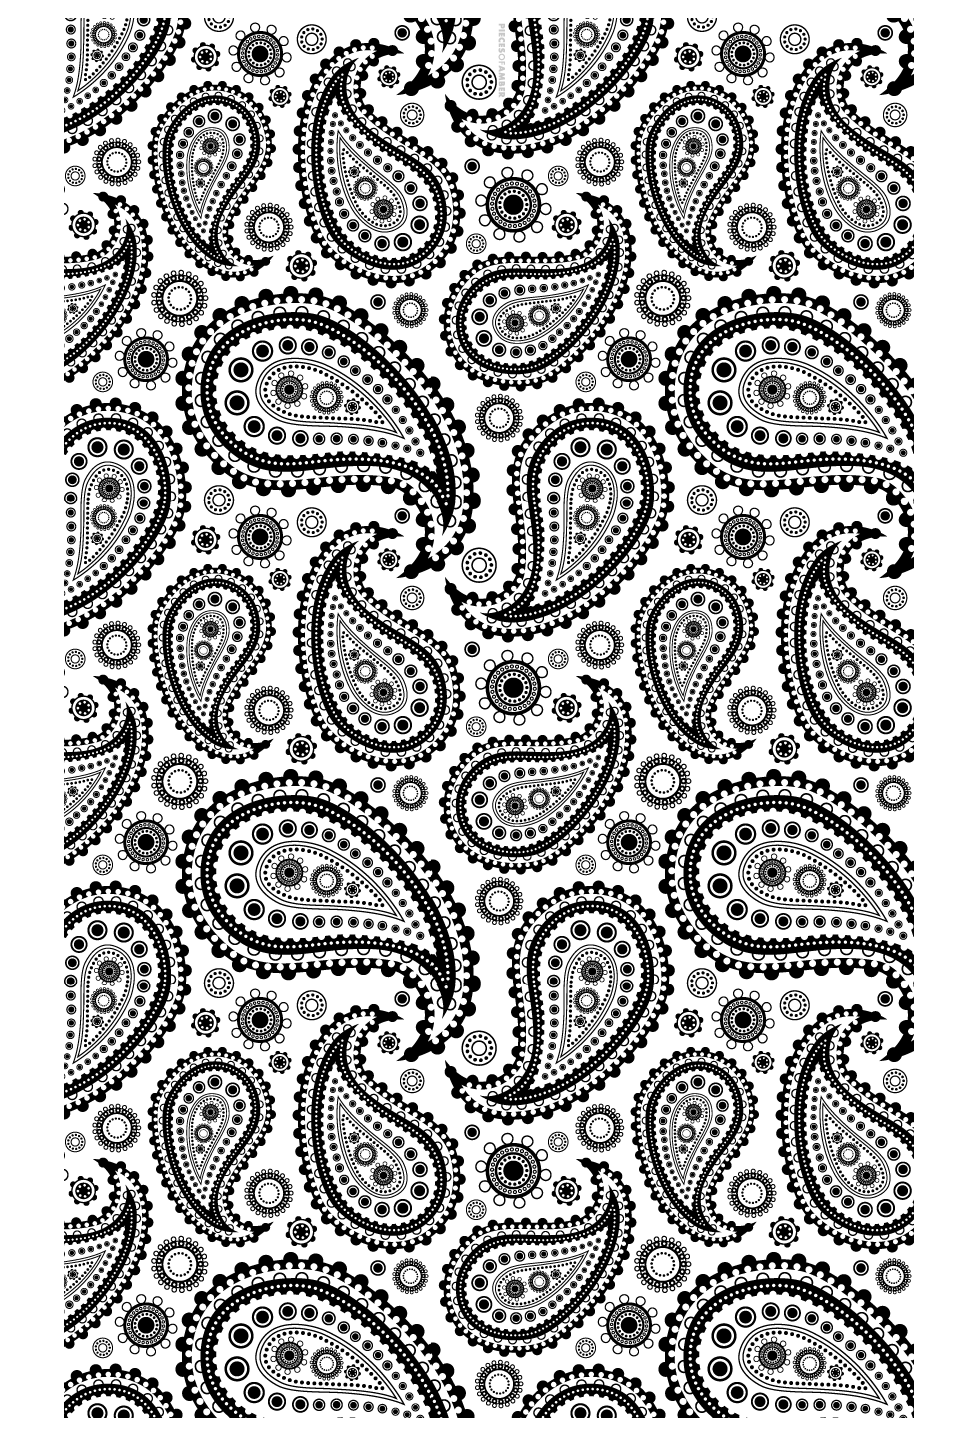 Paisley patterns